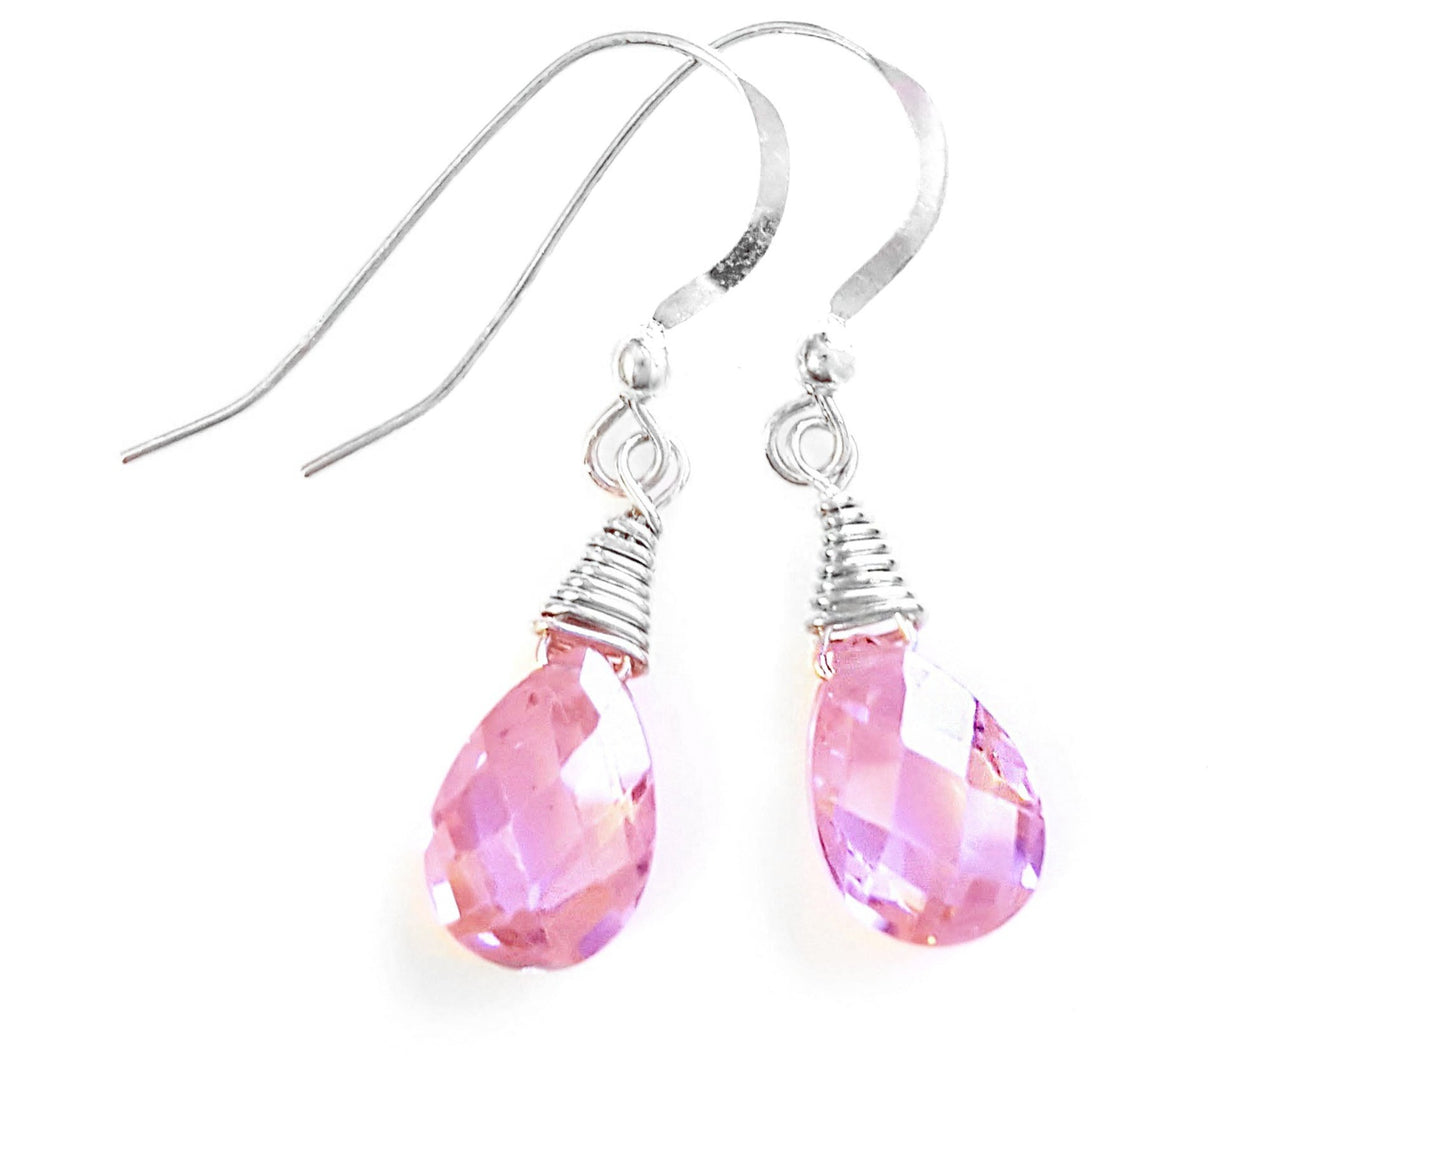 Pink Ice, Cubic Zirconia Dangle Earrings